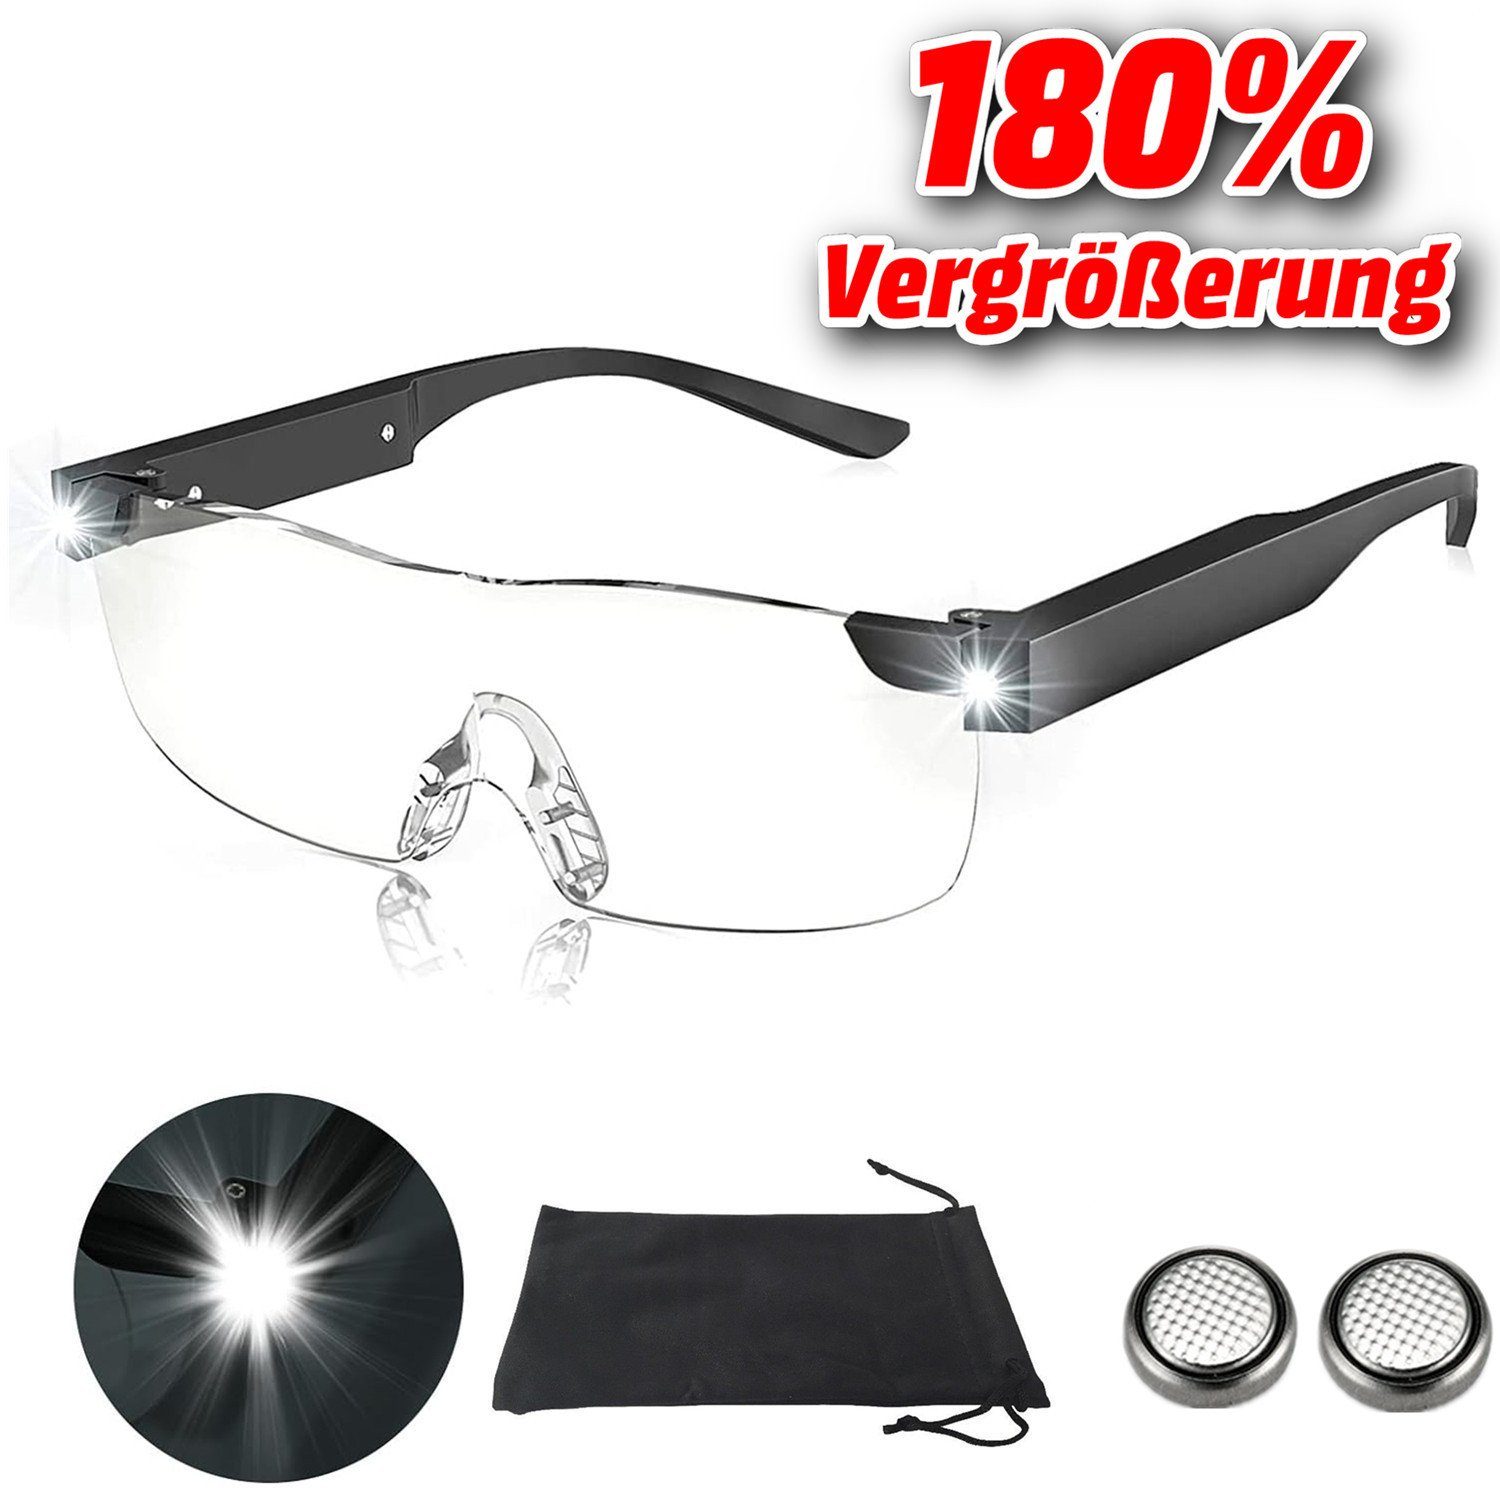 Olotos Lupenbrille LED Vergrößerungsbrille Leselupe Lesebrille Brille Lupe  Vergrößerung, 180% Vergrößerung mit Stoffetui